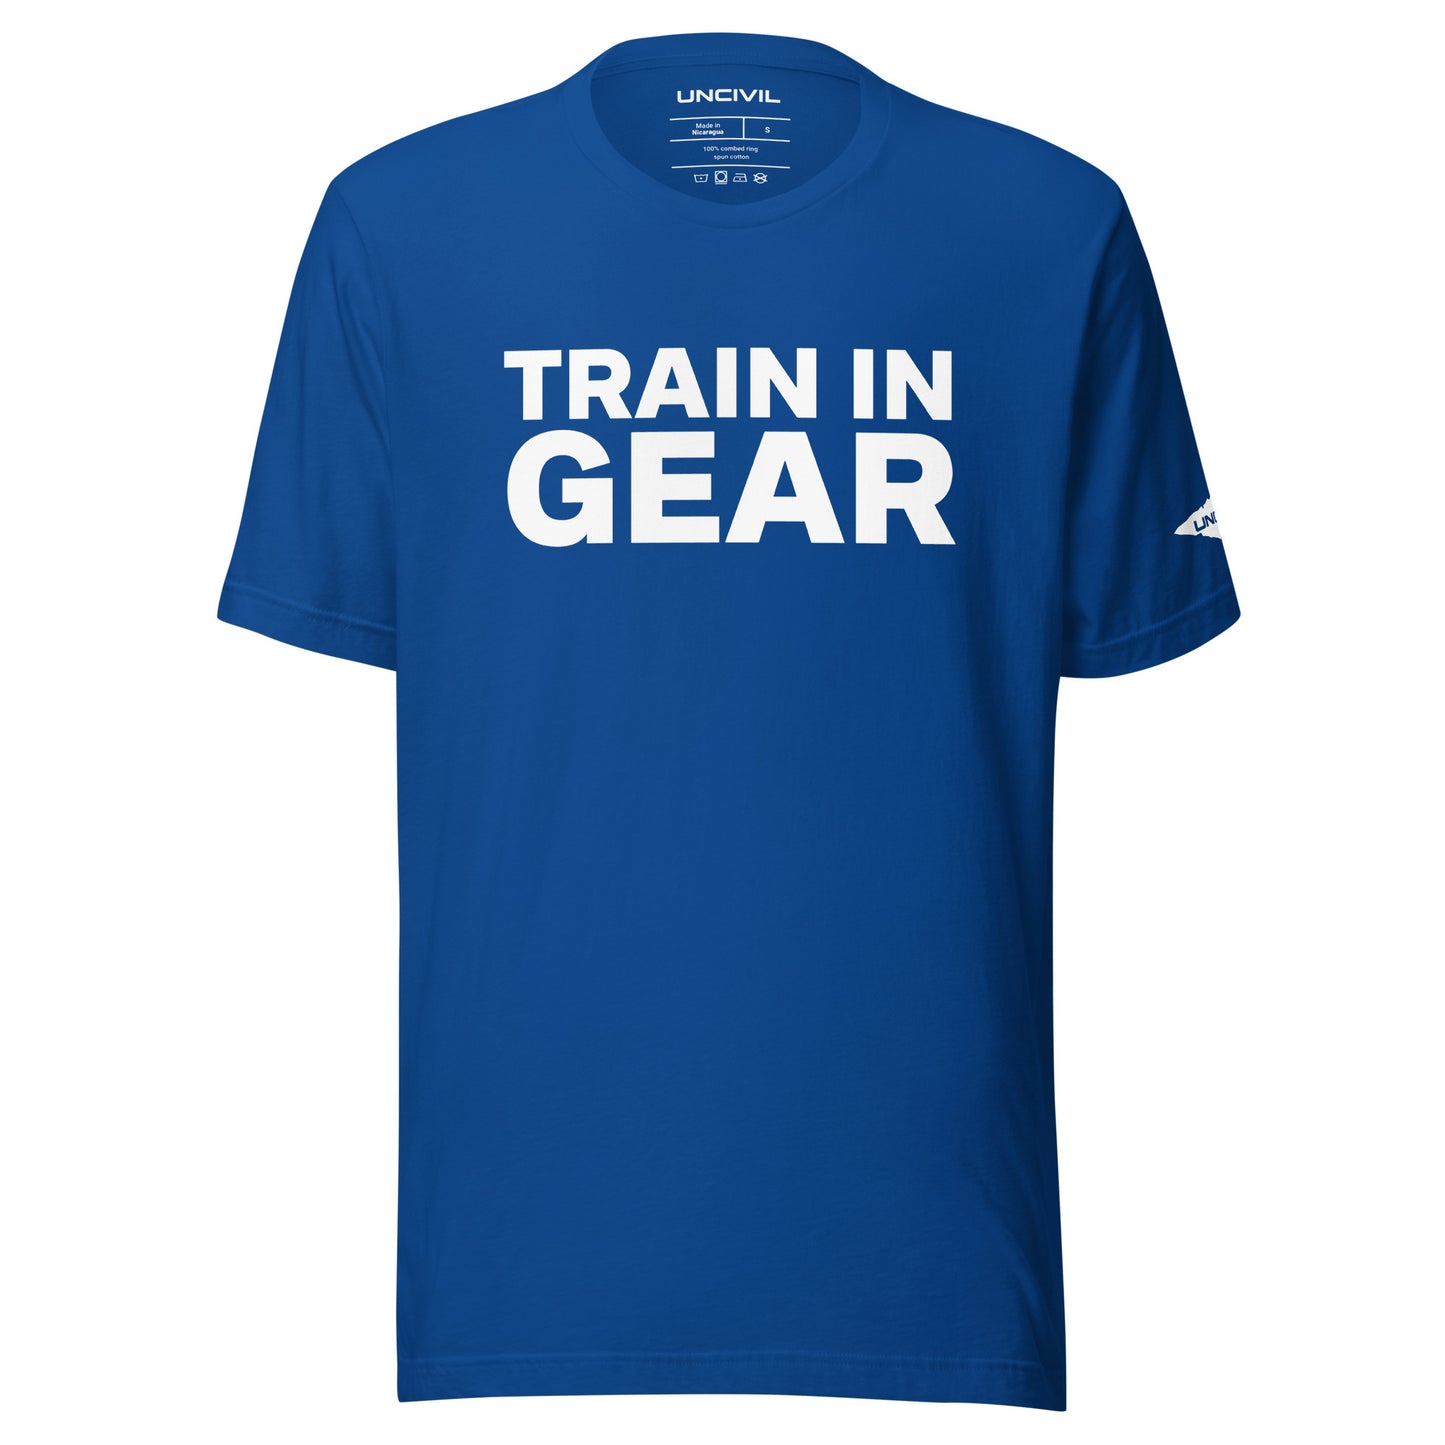 Train in Gear Firefighter shirt. Royal Blue Unisex t-shirt.